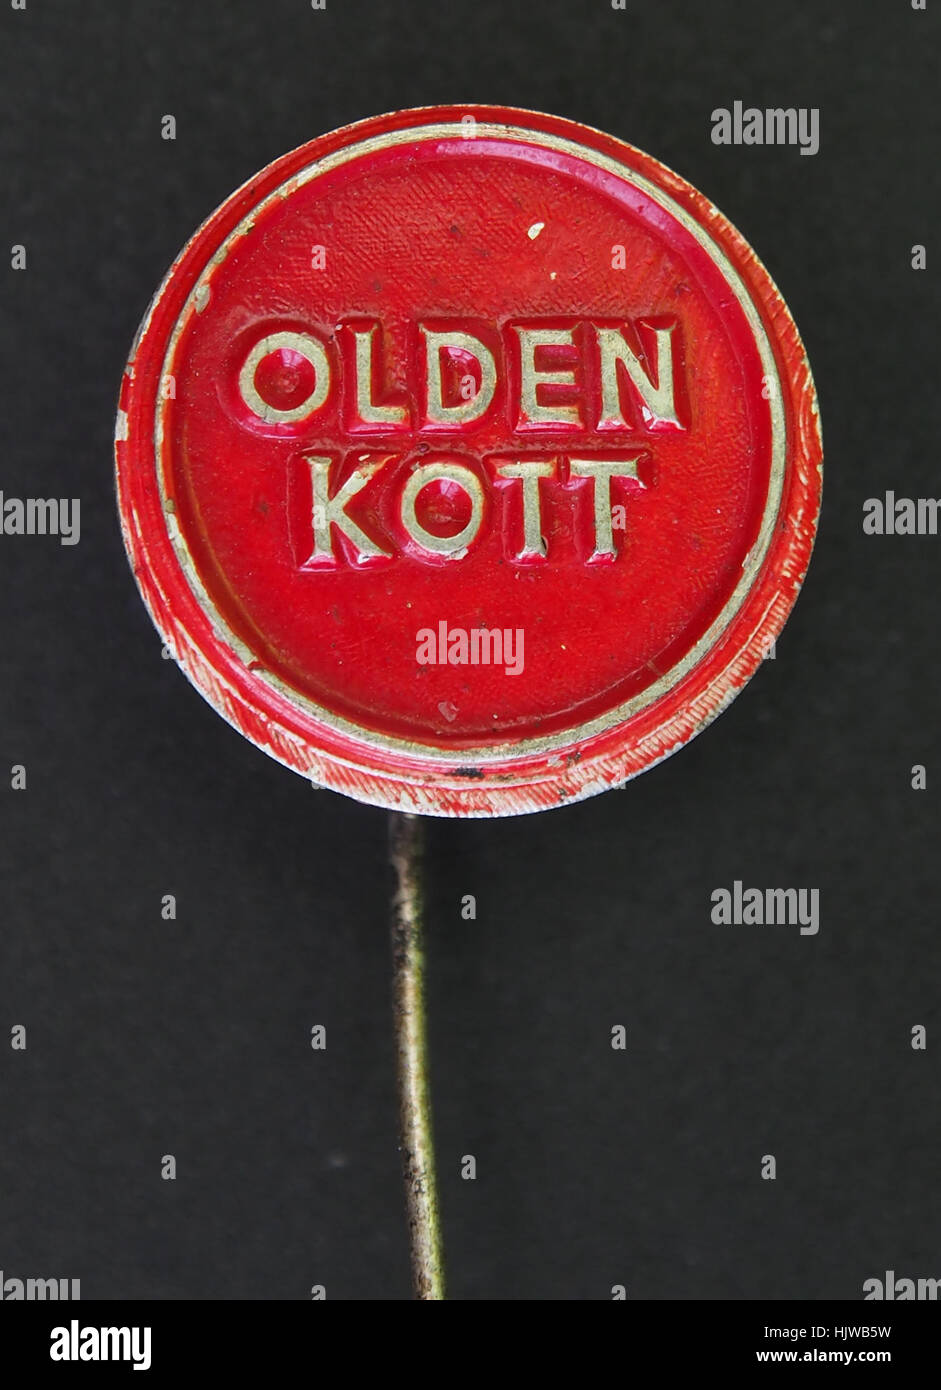 Olden Kott speldje Stock Photo